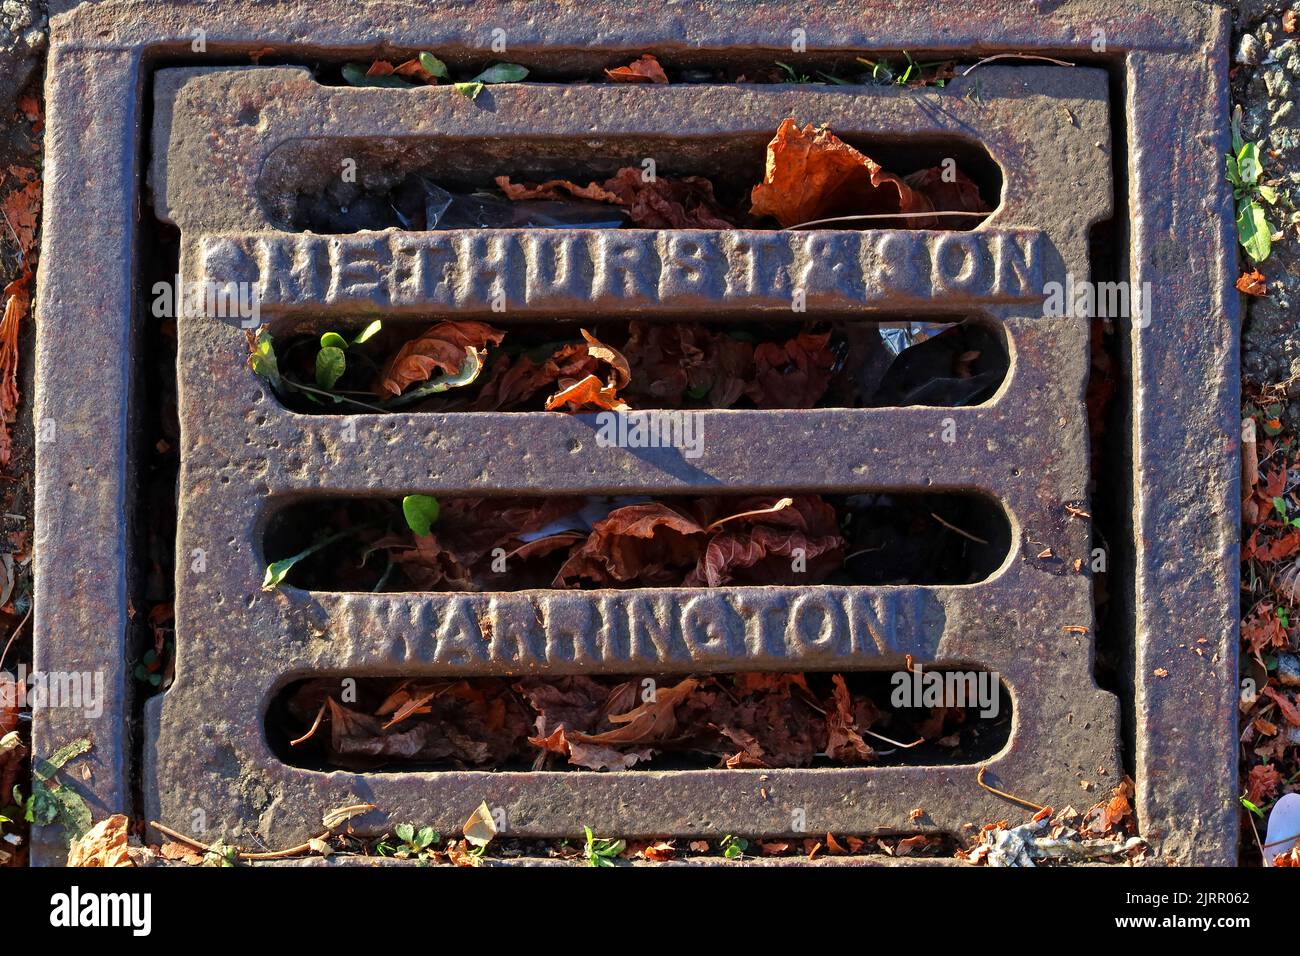 Fonte grilles de route en fonte gaufrée Warrington, Cheshire, Angleterre, Royaume-Uni, WA1 1NN Banque D'Images